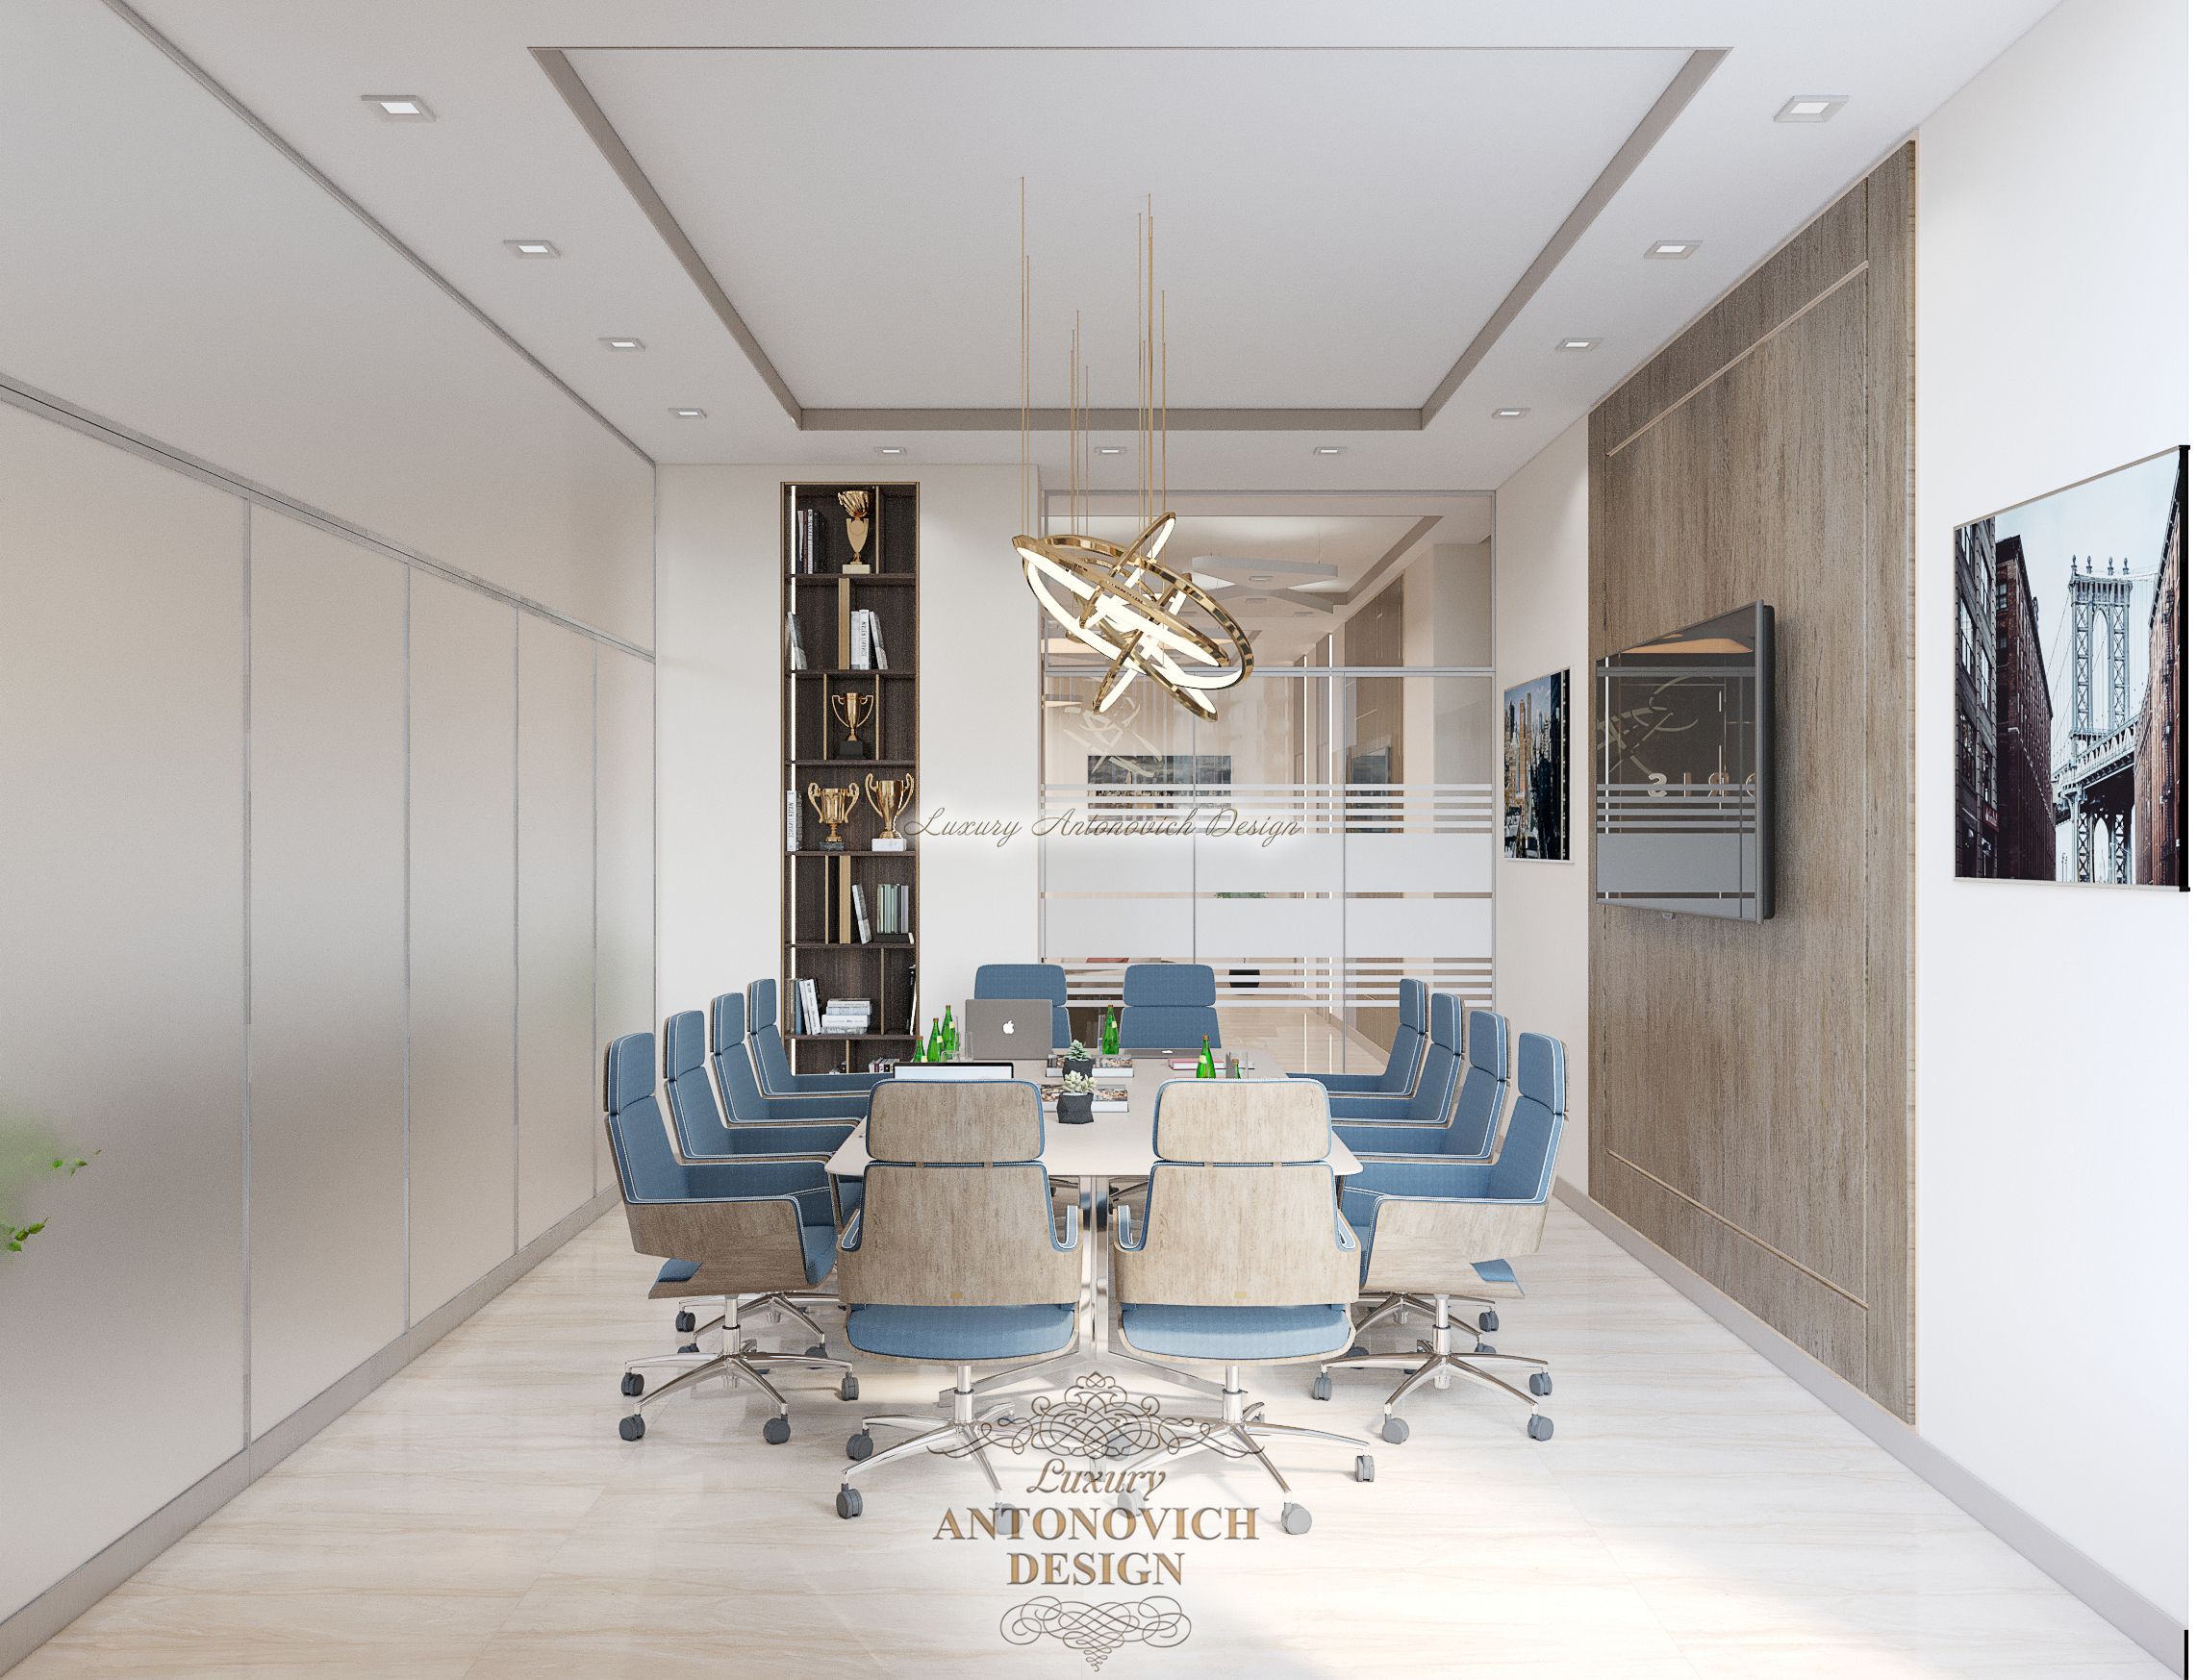 Современный интерьер, Конференц зал офиса (8)? Студия Luxury Antonovich Design